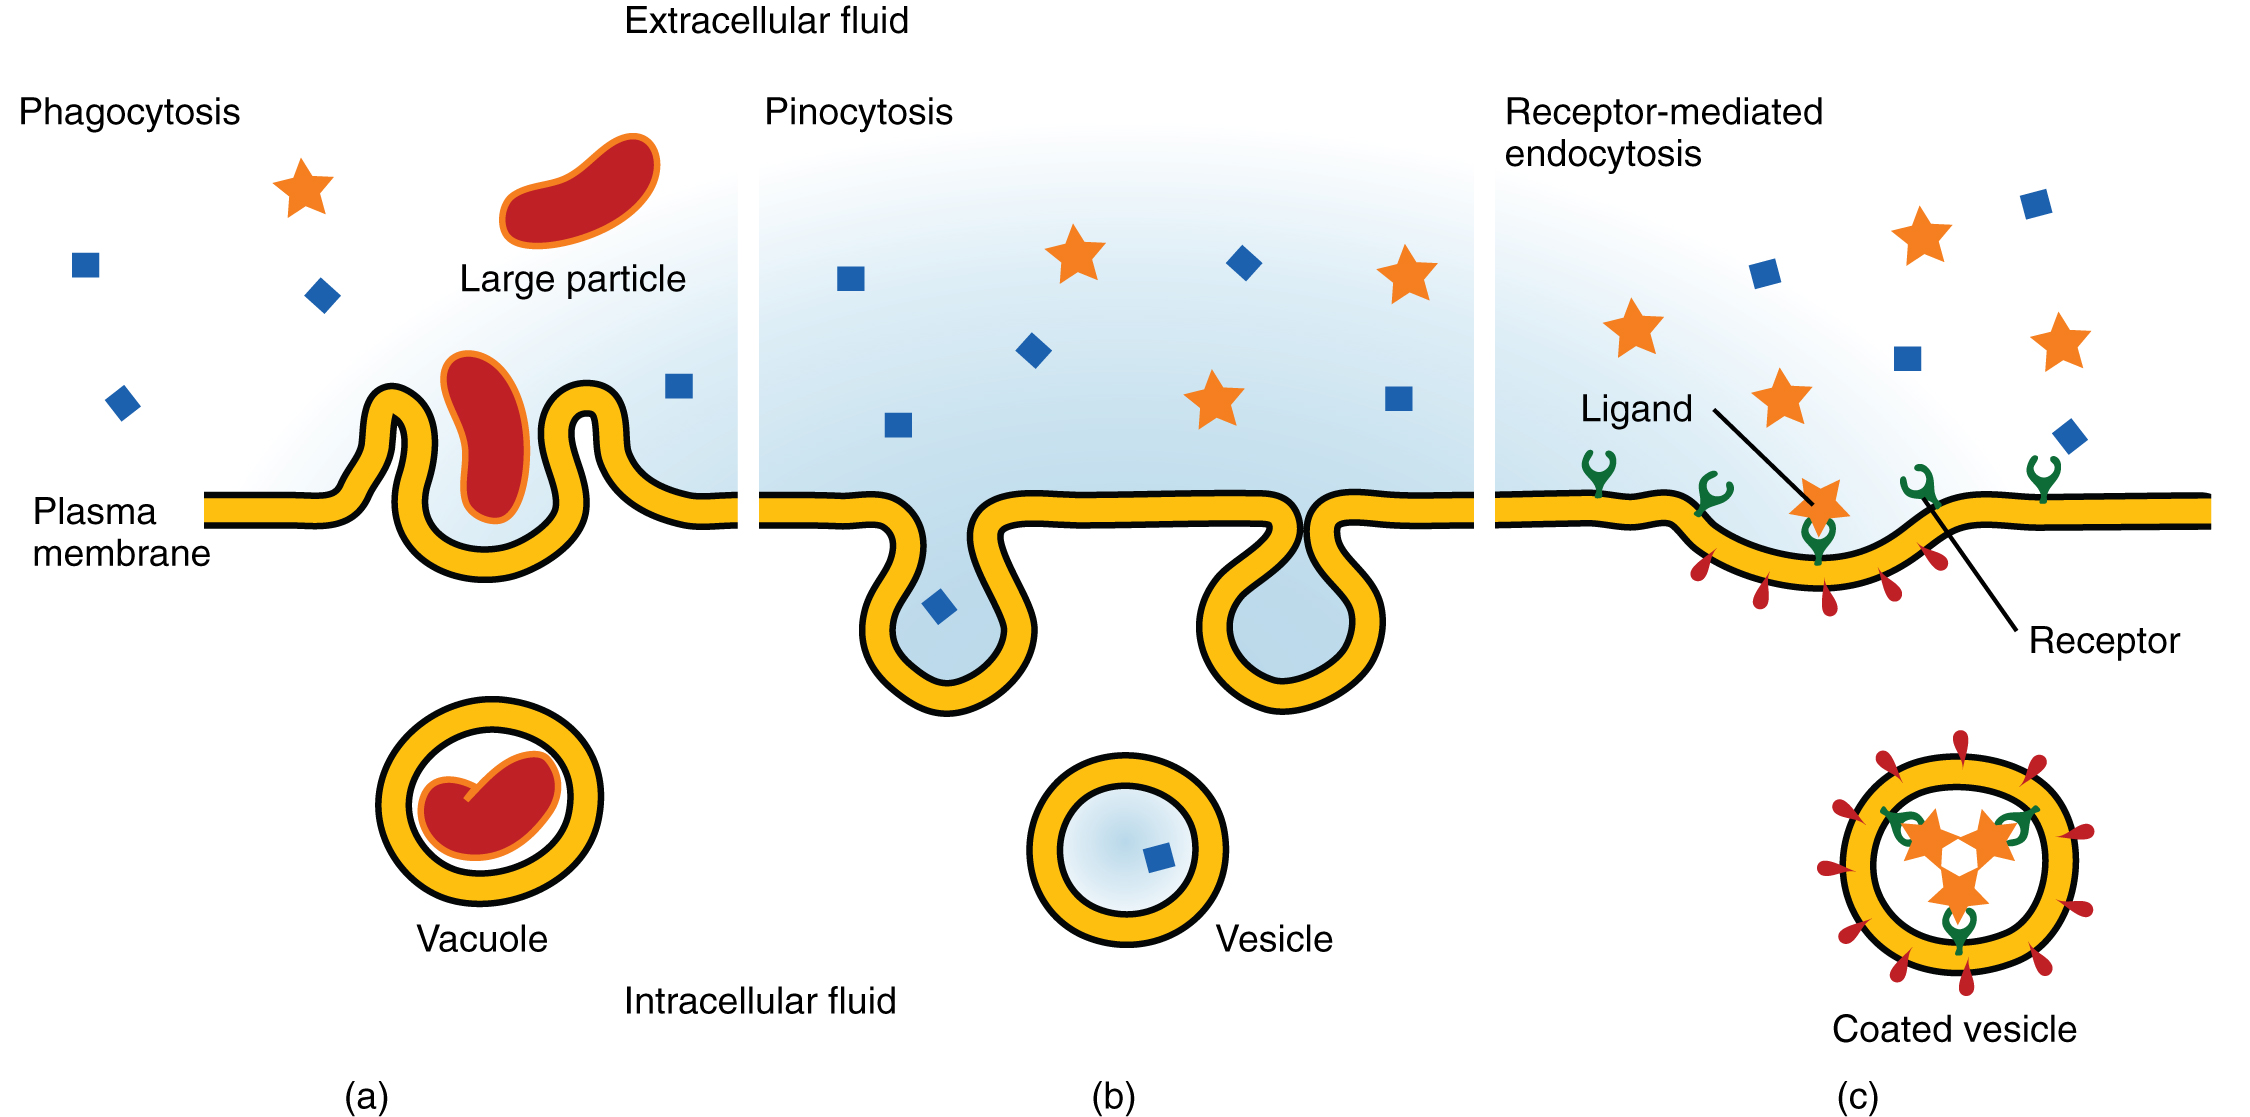 Esta imagem mostra os três tipos diferentes de endocitose. O painel esquerdo mostra a fagocitose, onde uma partícula grande é vista sendo engolida pela membrana em um vacúolo. No painel central, é mostrada a pinocitose, onde uma pequena partícula é engolida em uma vesícula. No painel direito, a endocitose mediada pelo receptor é mostrada; o ligante se liga ao receptor e é então engolido em uma vesícula revestida.